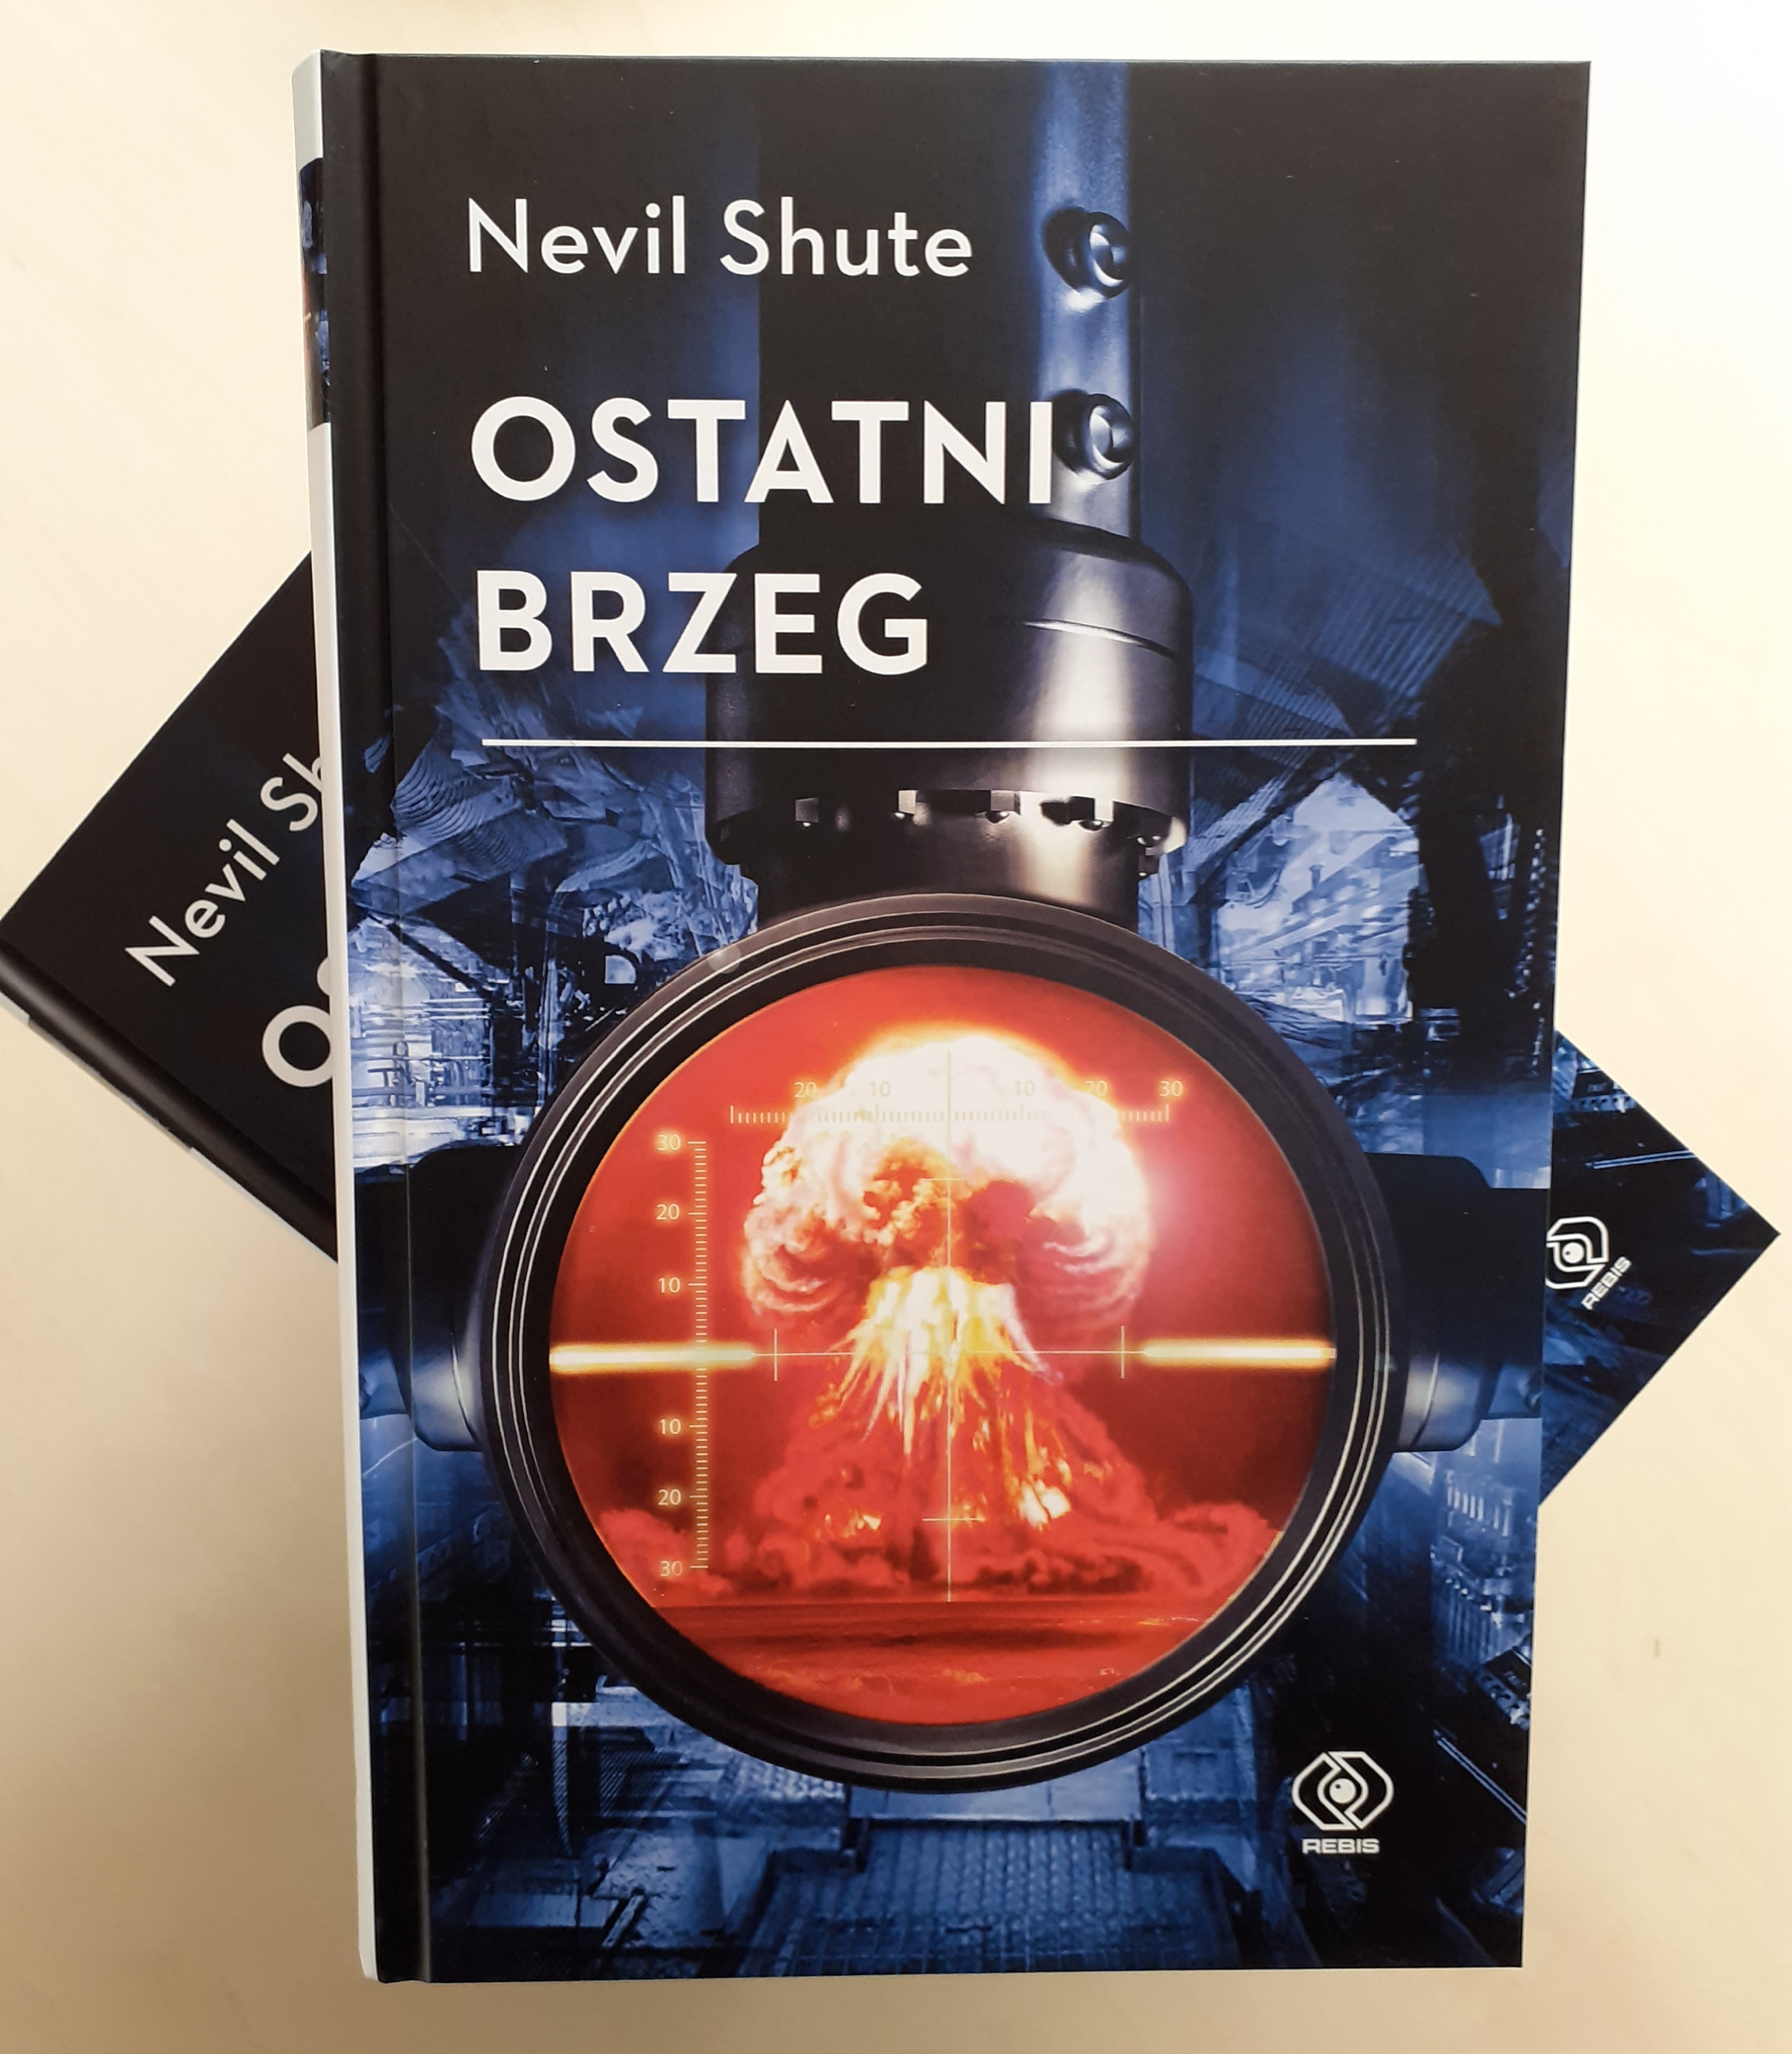 Ostatni brzeg, Nevil Shute - najsłynniejsza powieść o skutkach globalnej wojny nuklearnej